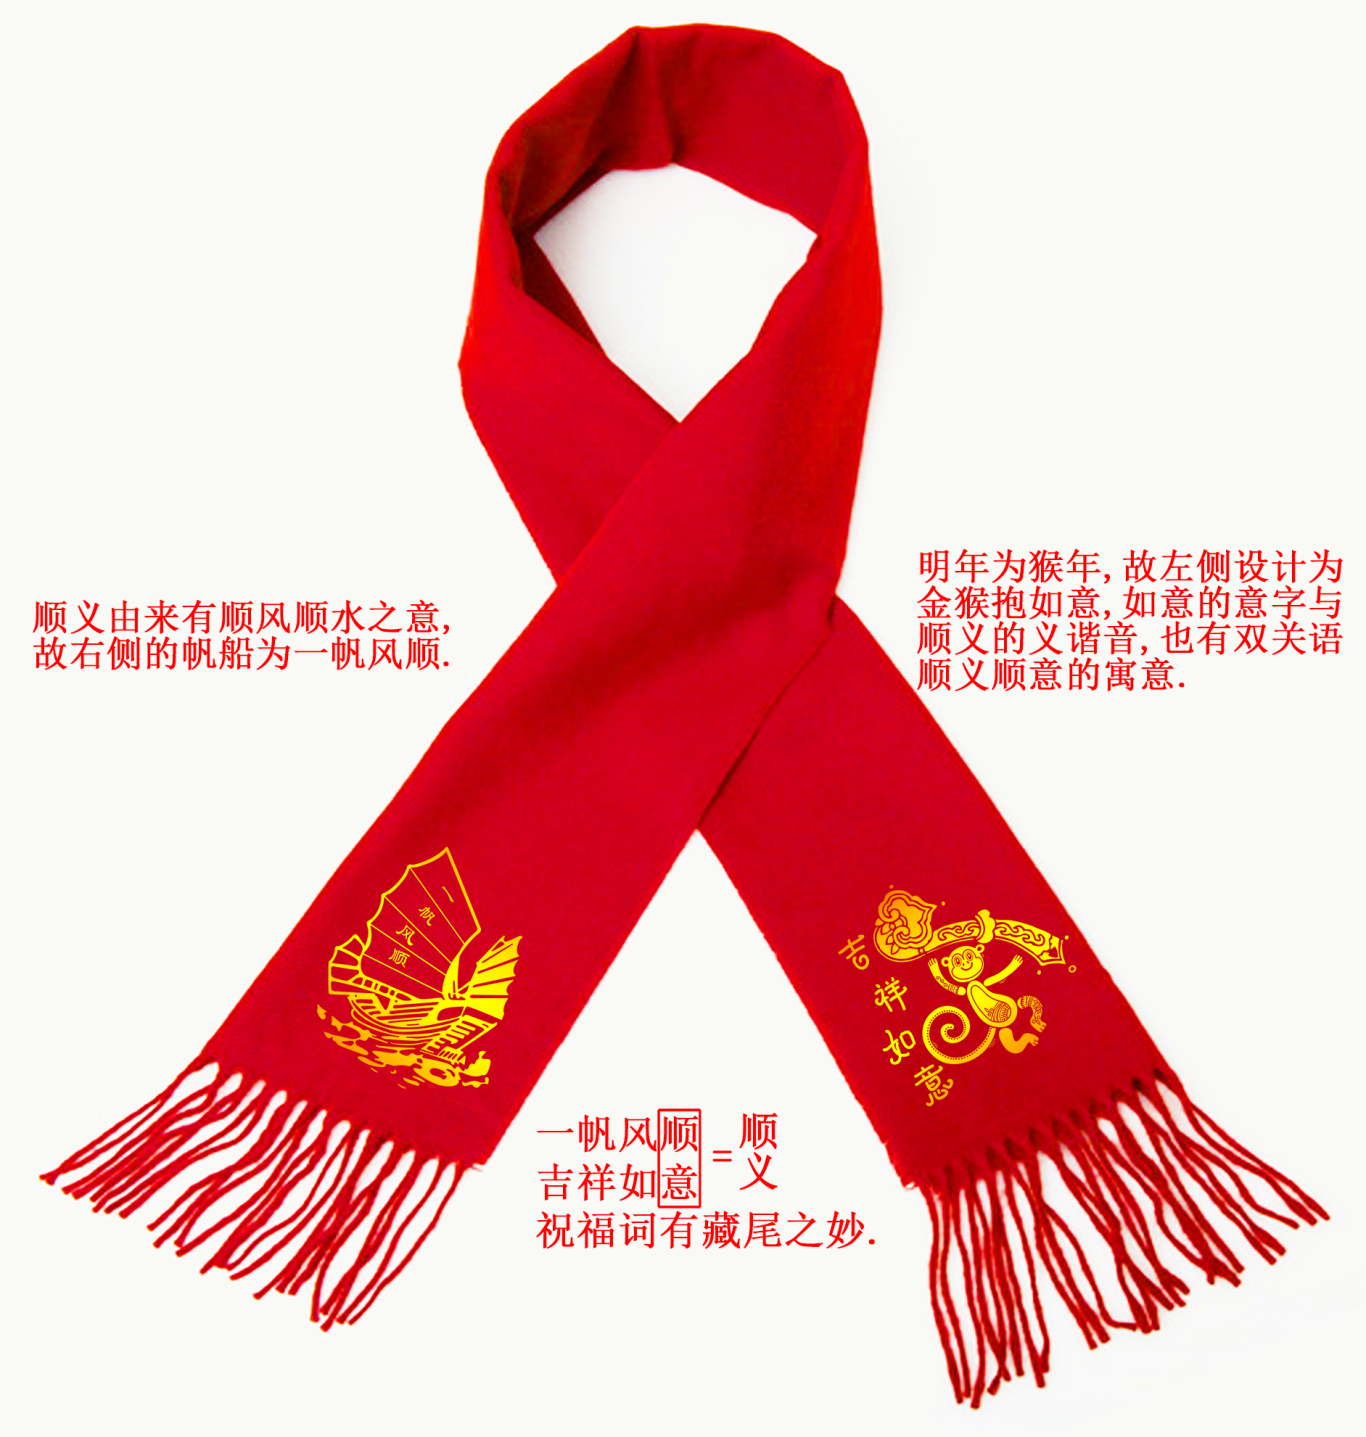 順義鮮花港春節活動圍巾設計圖0